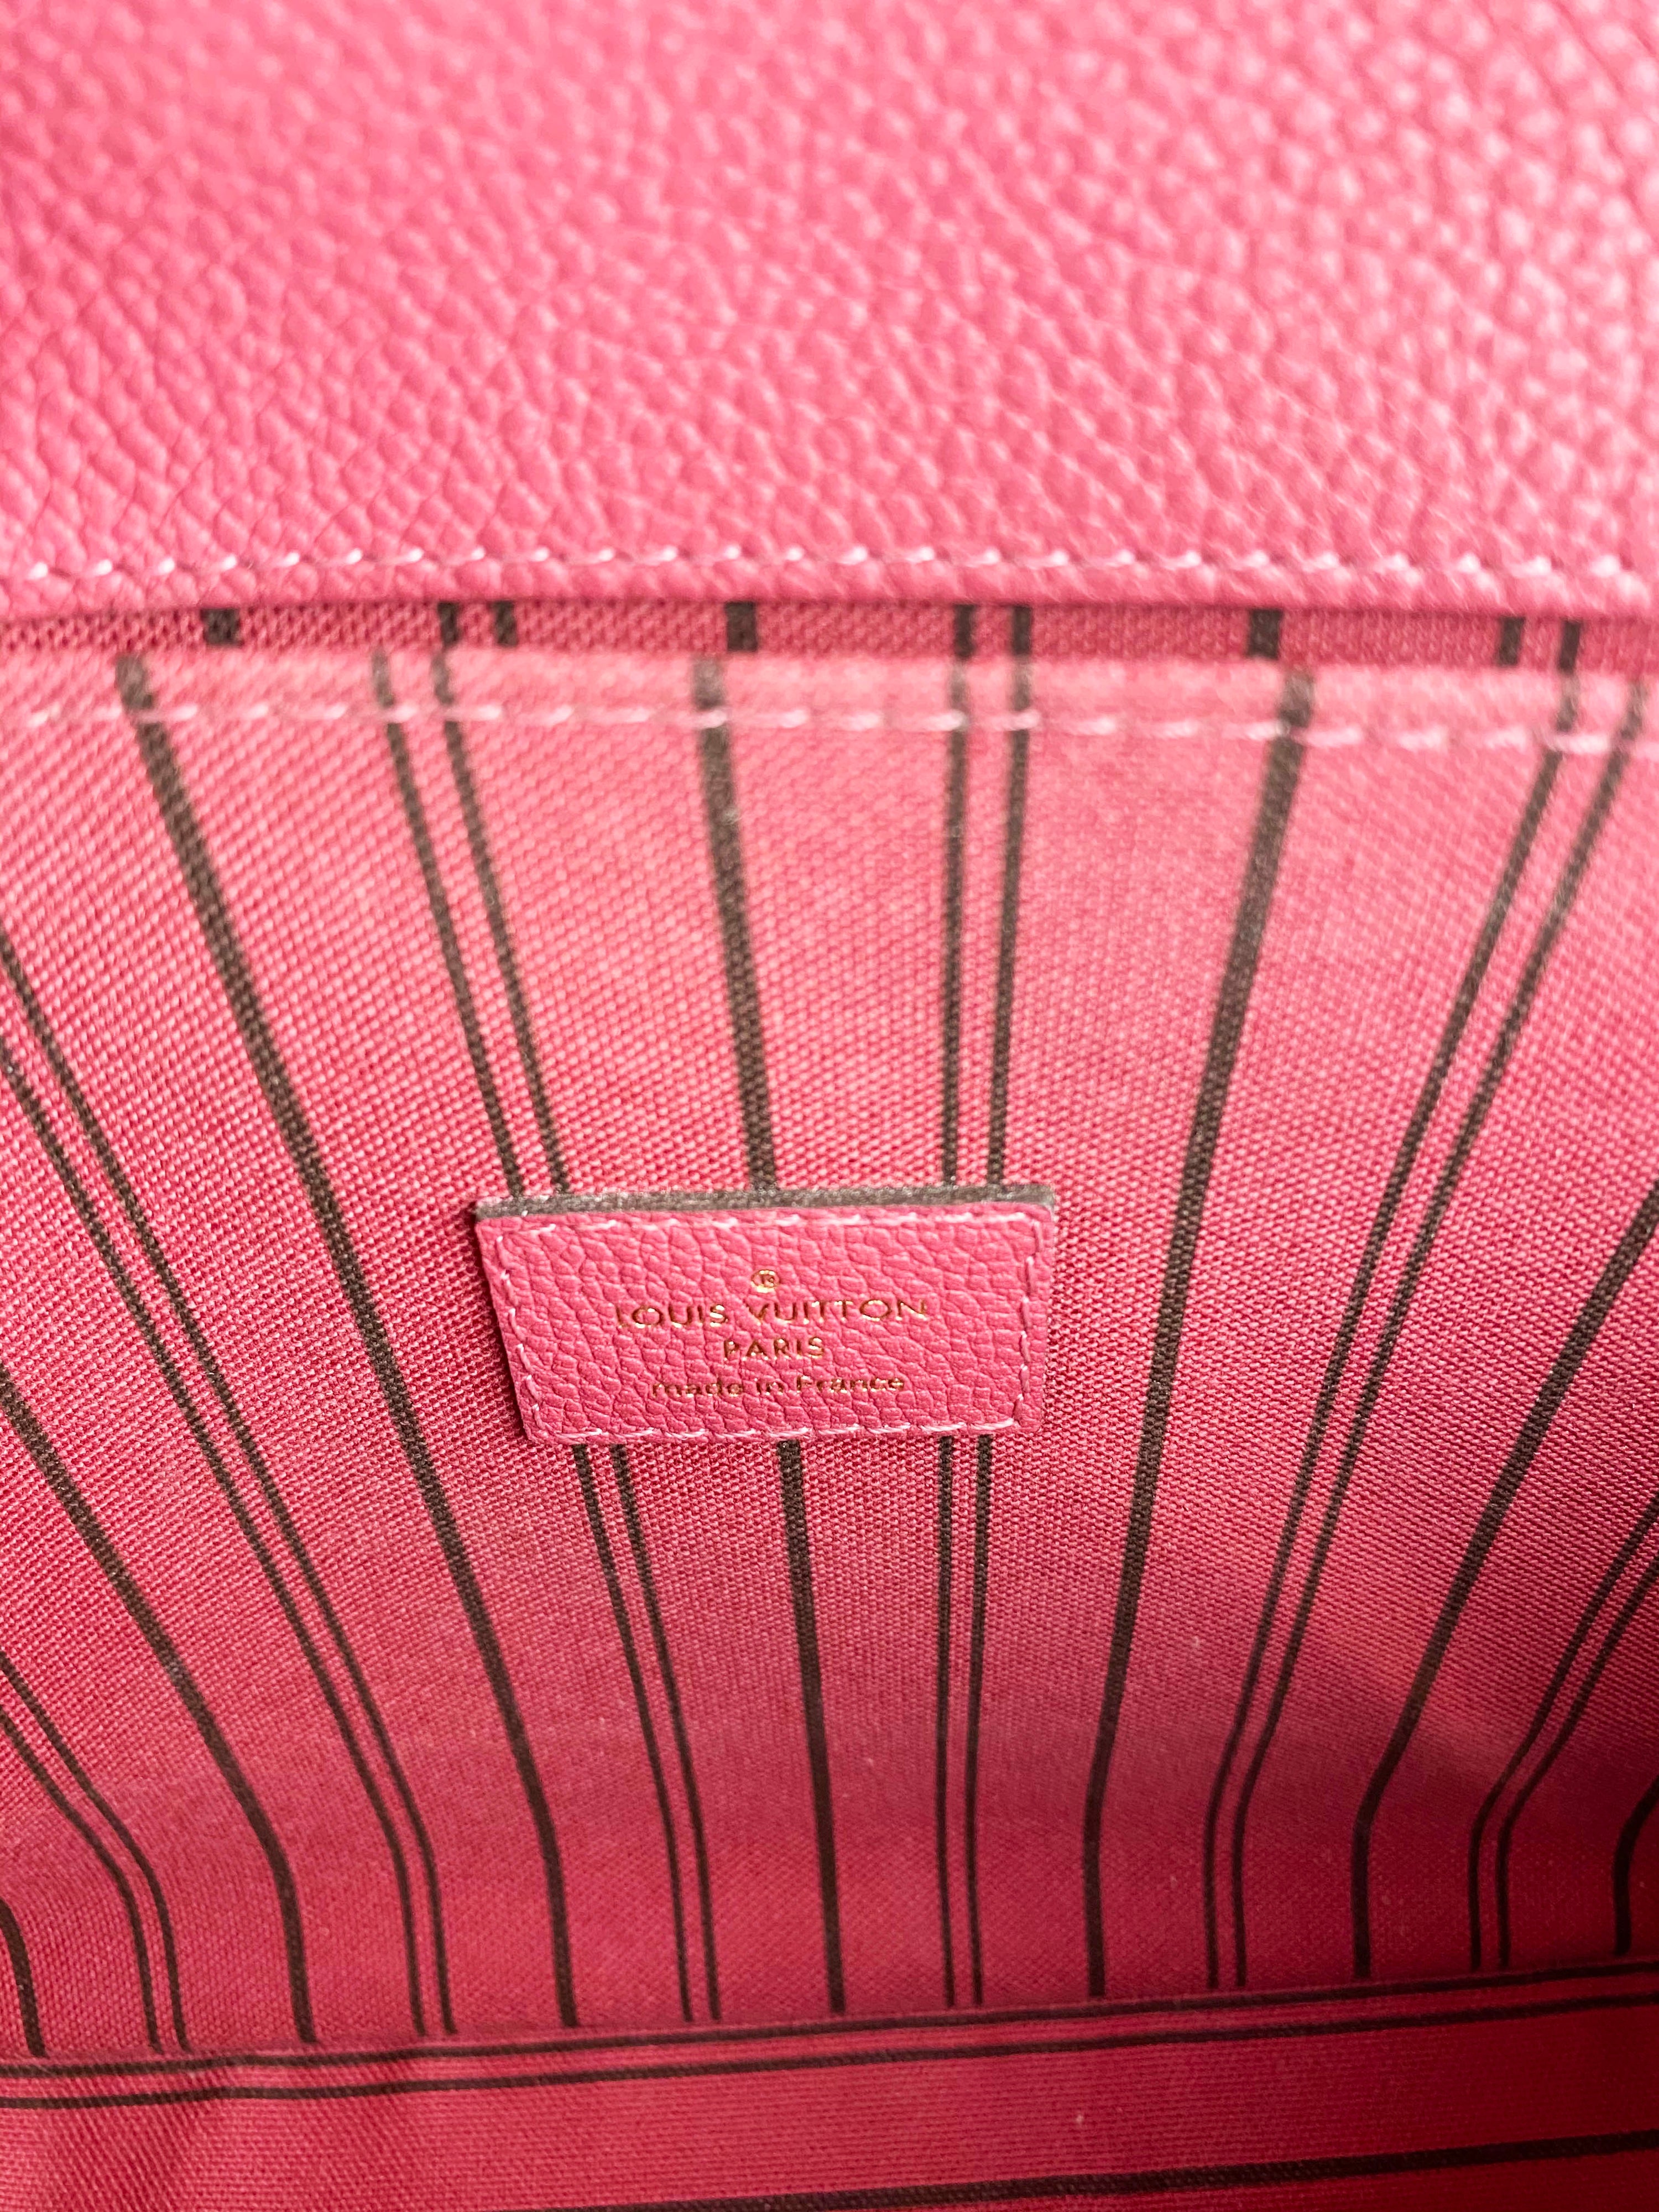 Louis Vuitton Pochette Metis Empreinte Rose Bruyere Bag